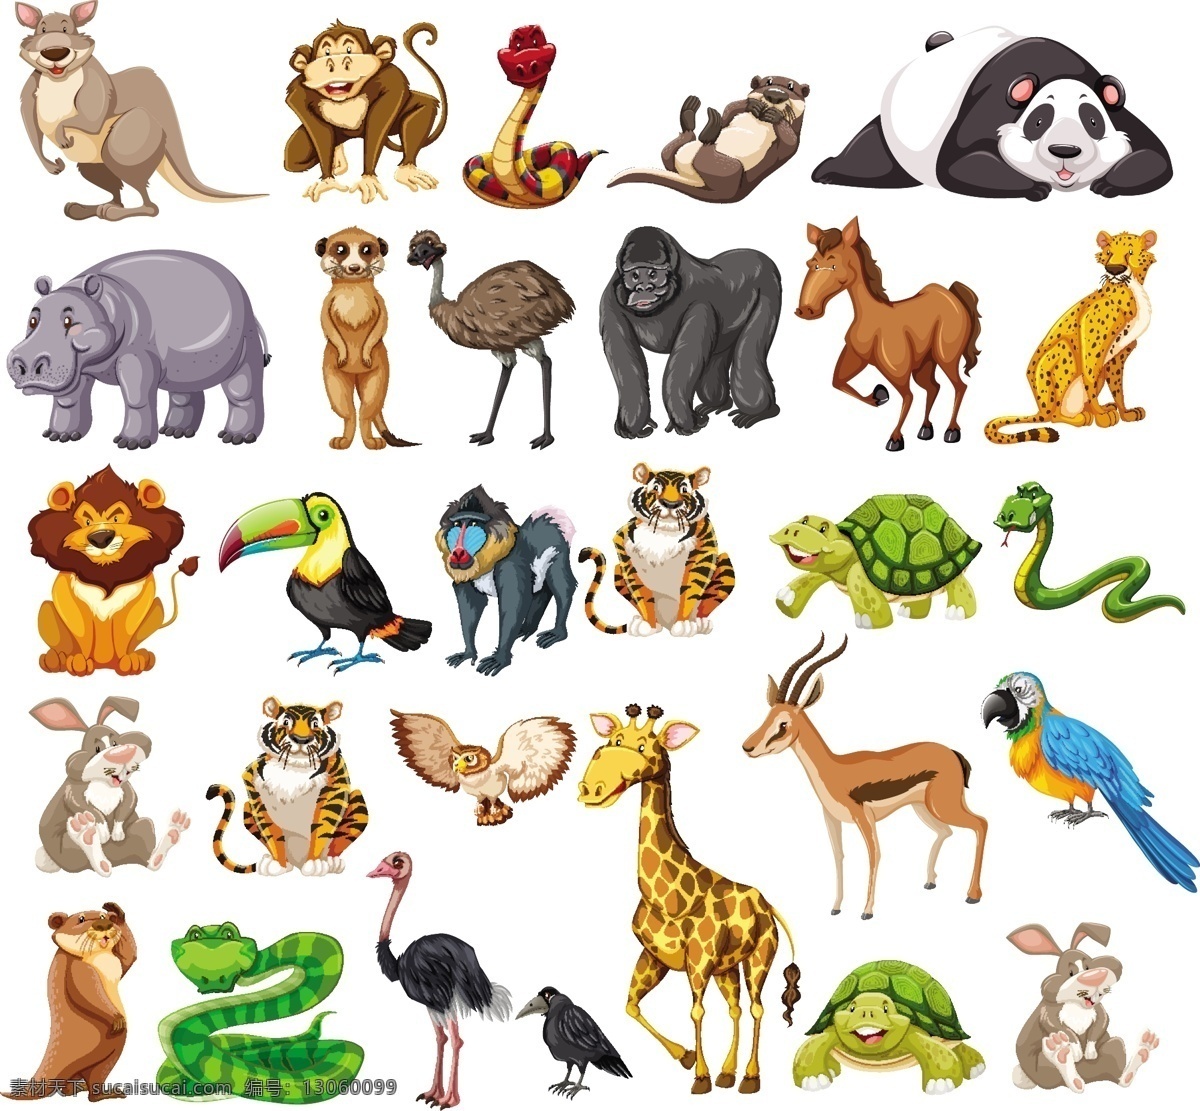 卡通动物素材 野生动物 手绘动物 动物 素描 手绘 卡通动物园 动物园 卡通 可爱动物 小动物 动物贴纸 生物世界